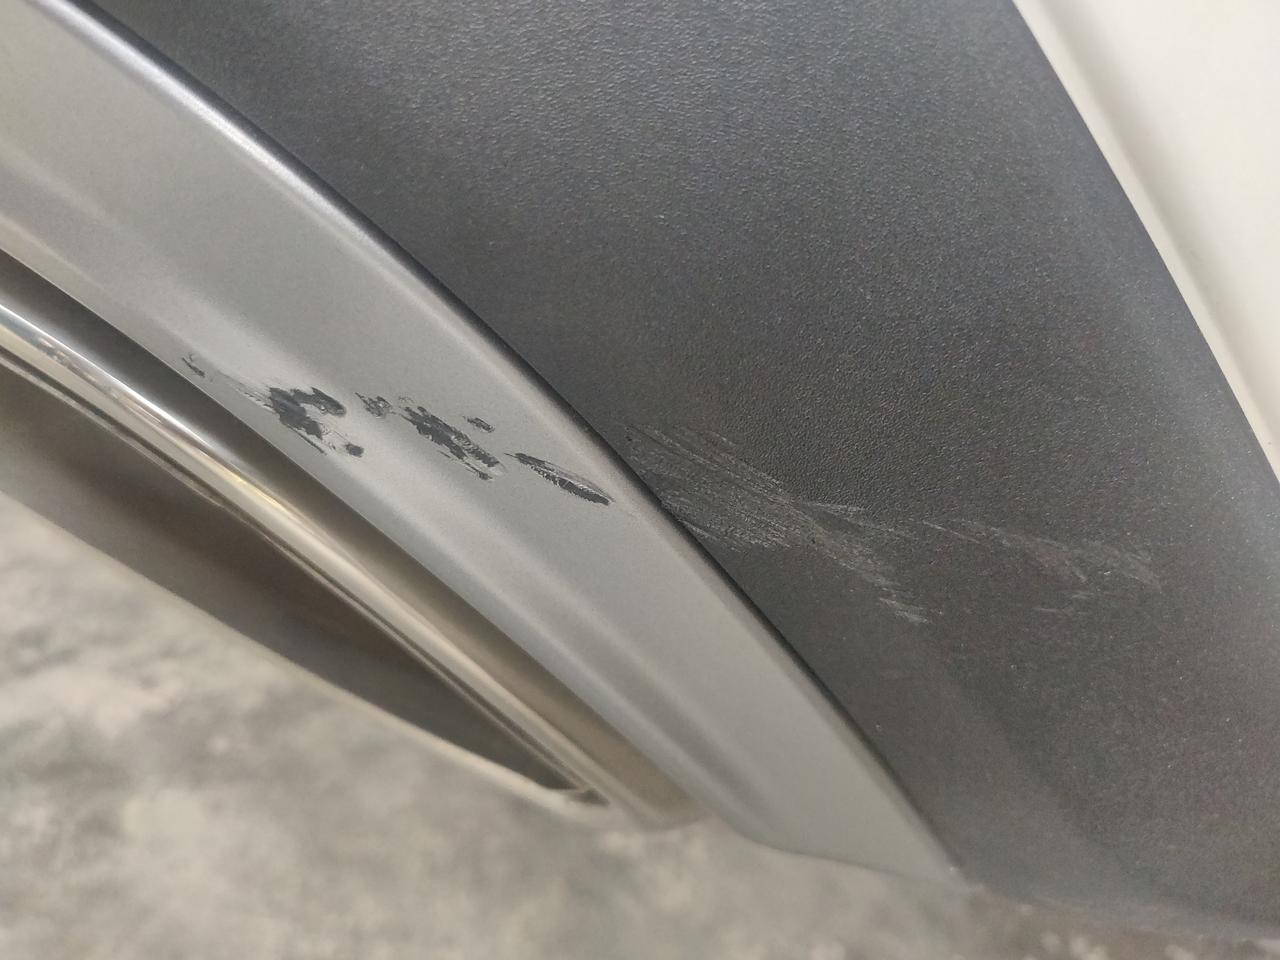 福特锐界 倒车撞到摩托车了，尾部右后露出黑色塑料了，自己补漆能行吗，这个是银灰吗？会不会有色差？